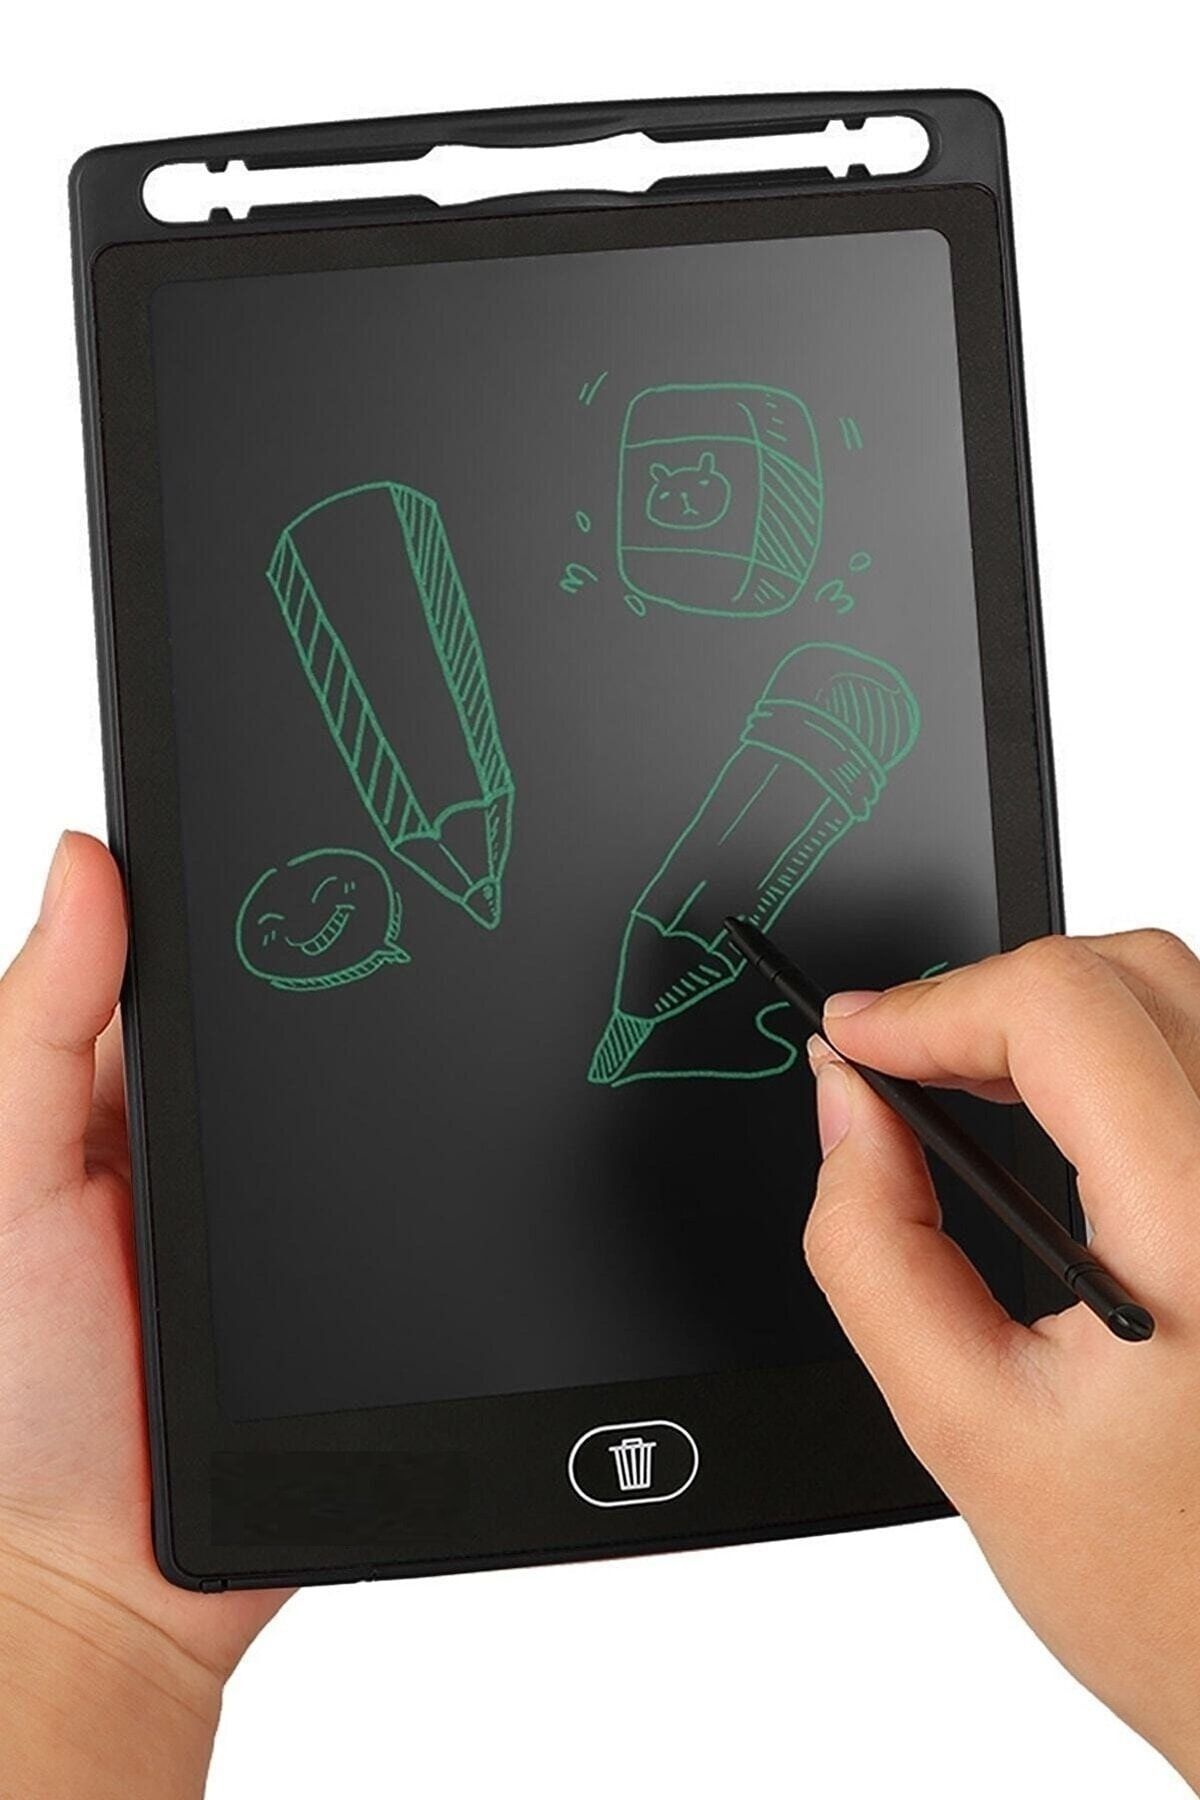 obrigado Writing Tablet Lcd 8.5 Inç Uyumlu Dijital Kalemli Çizim Yazı Tahtası Grafik Eğitim Tableti 1 Adet